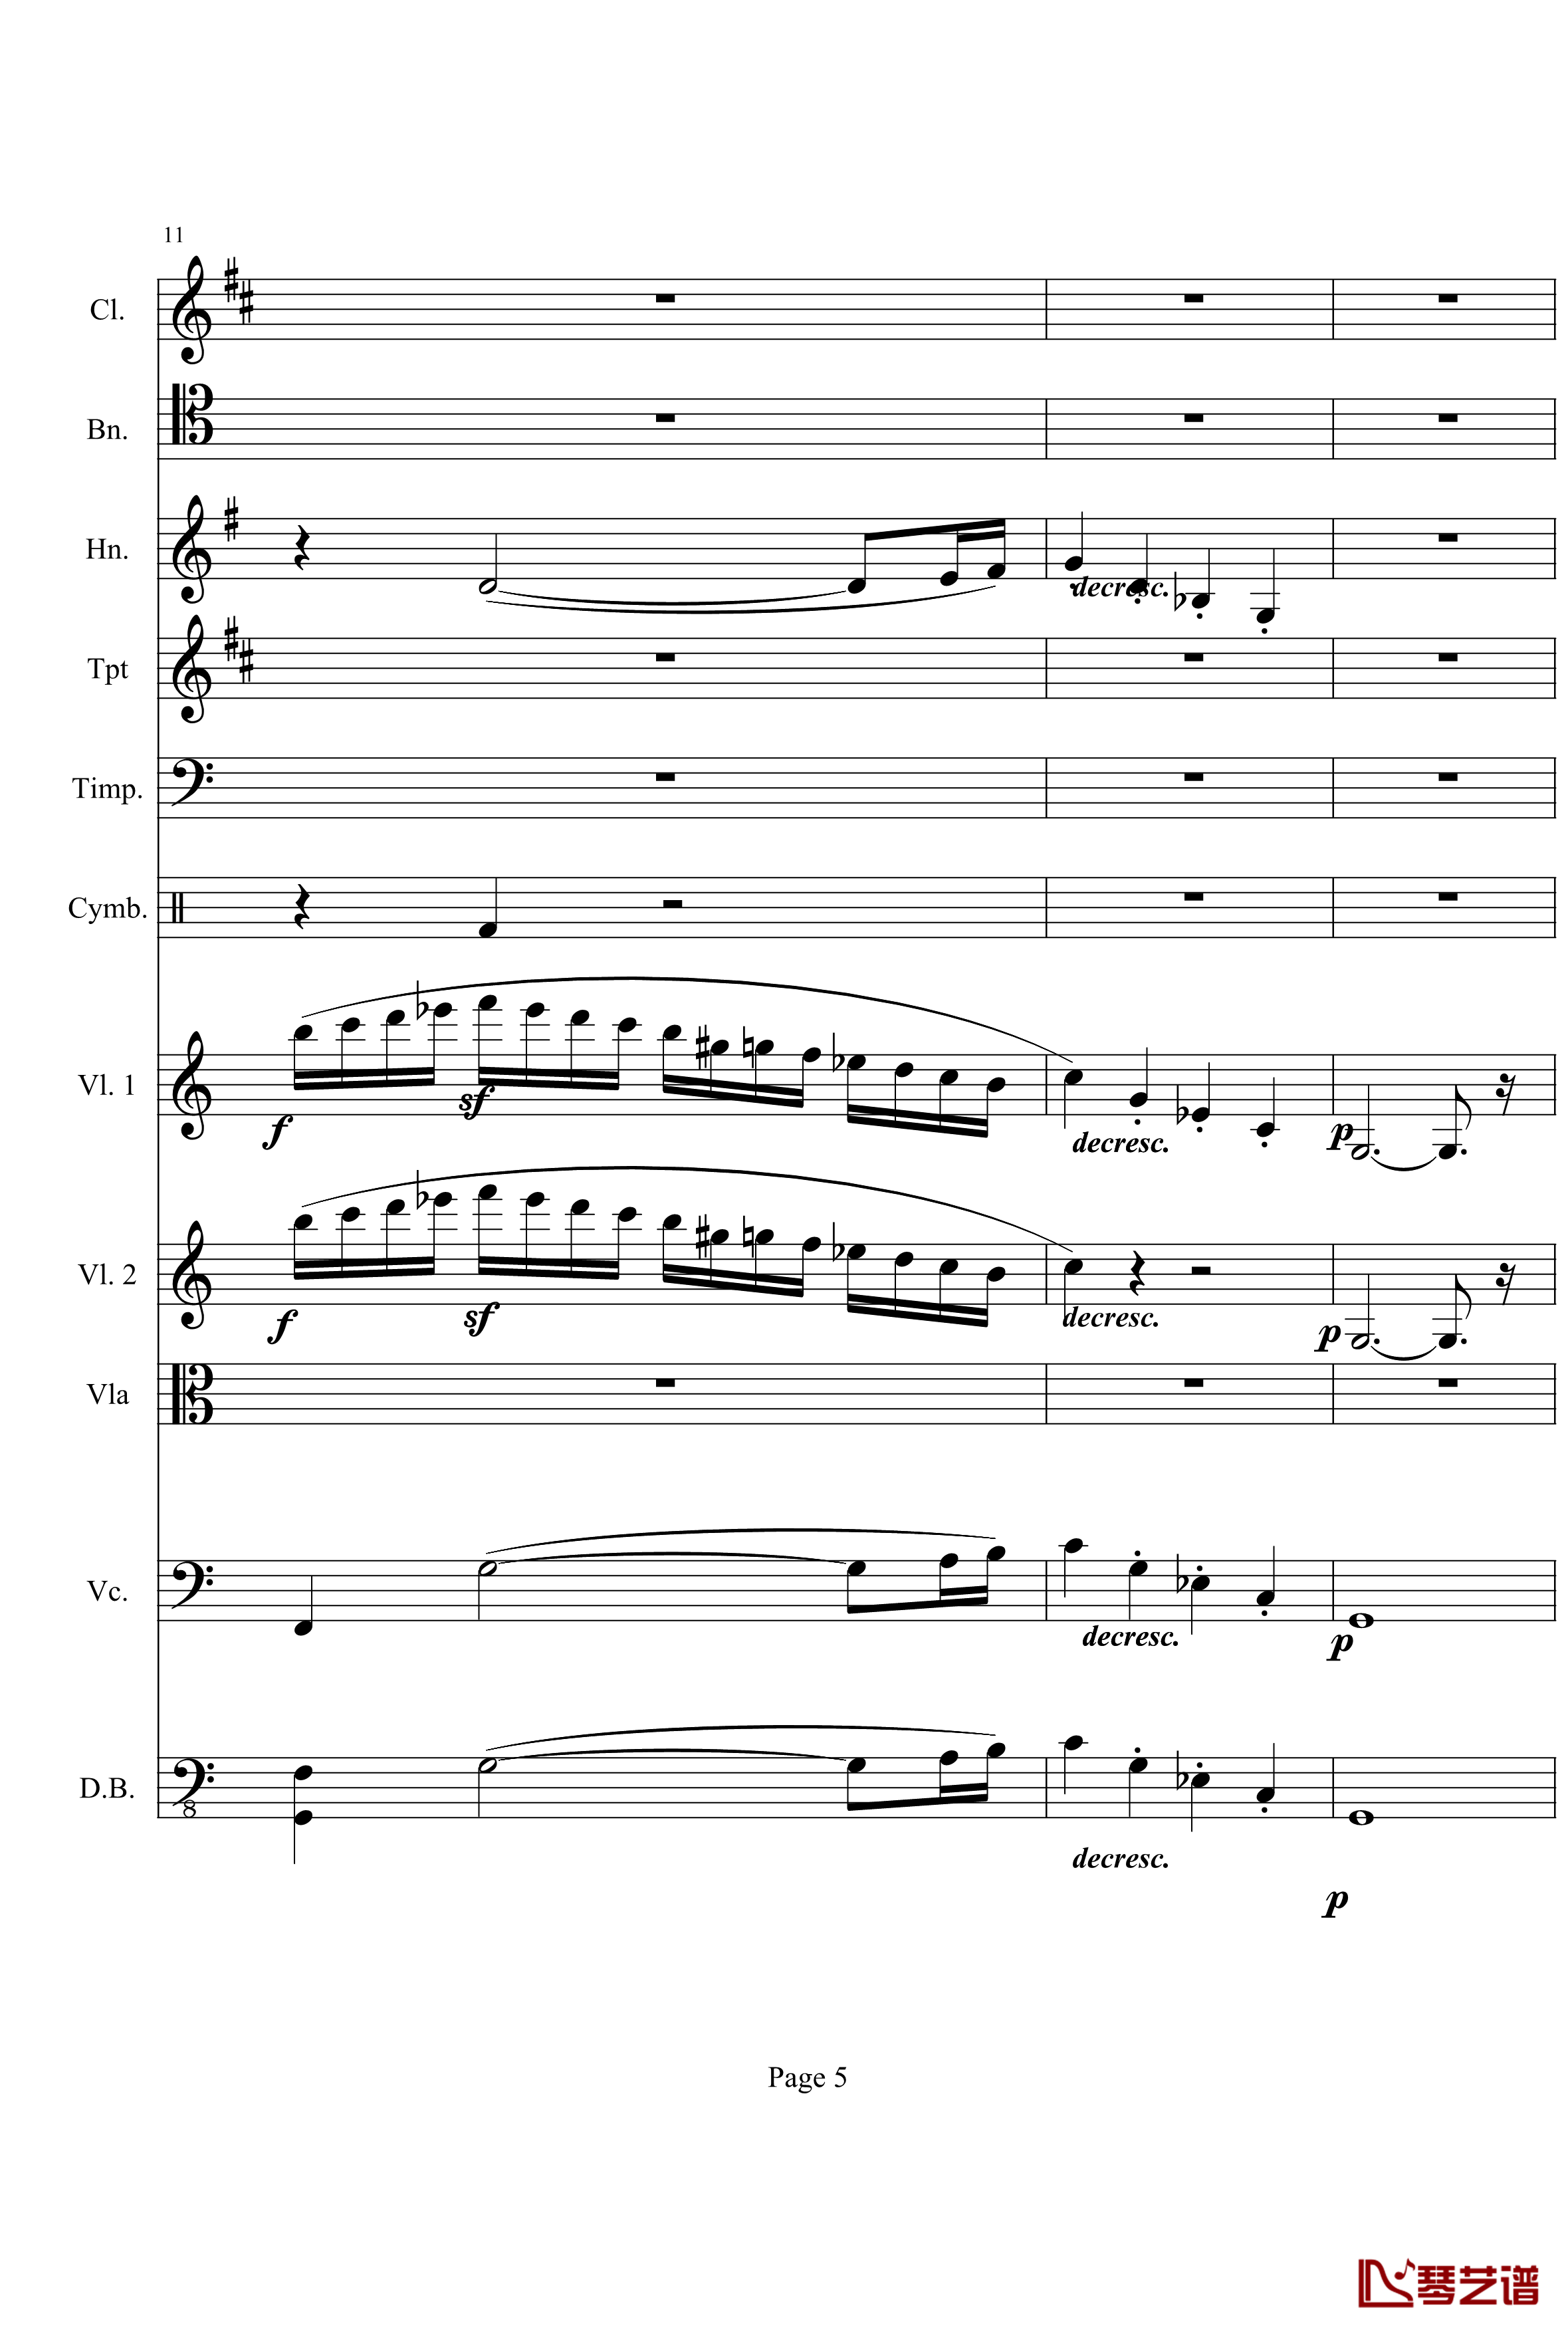 奏鸣曲之交响钢琴谱-第21-Ⅰ-贝多芬-beethoven5